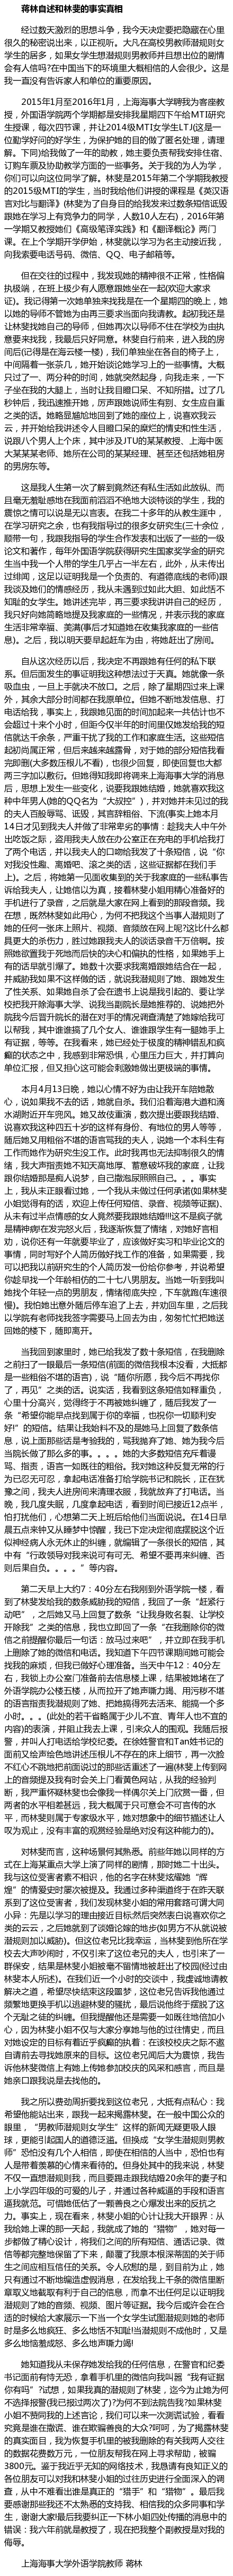 上海海事大学林斐遭教授性侵事件真相 副院长蒋林是谁引发热议